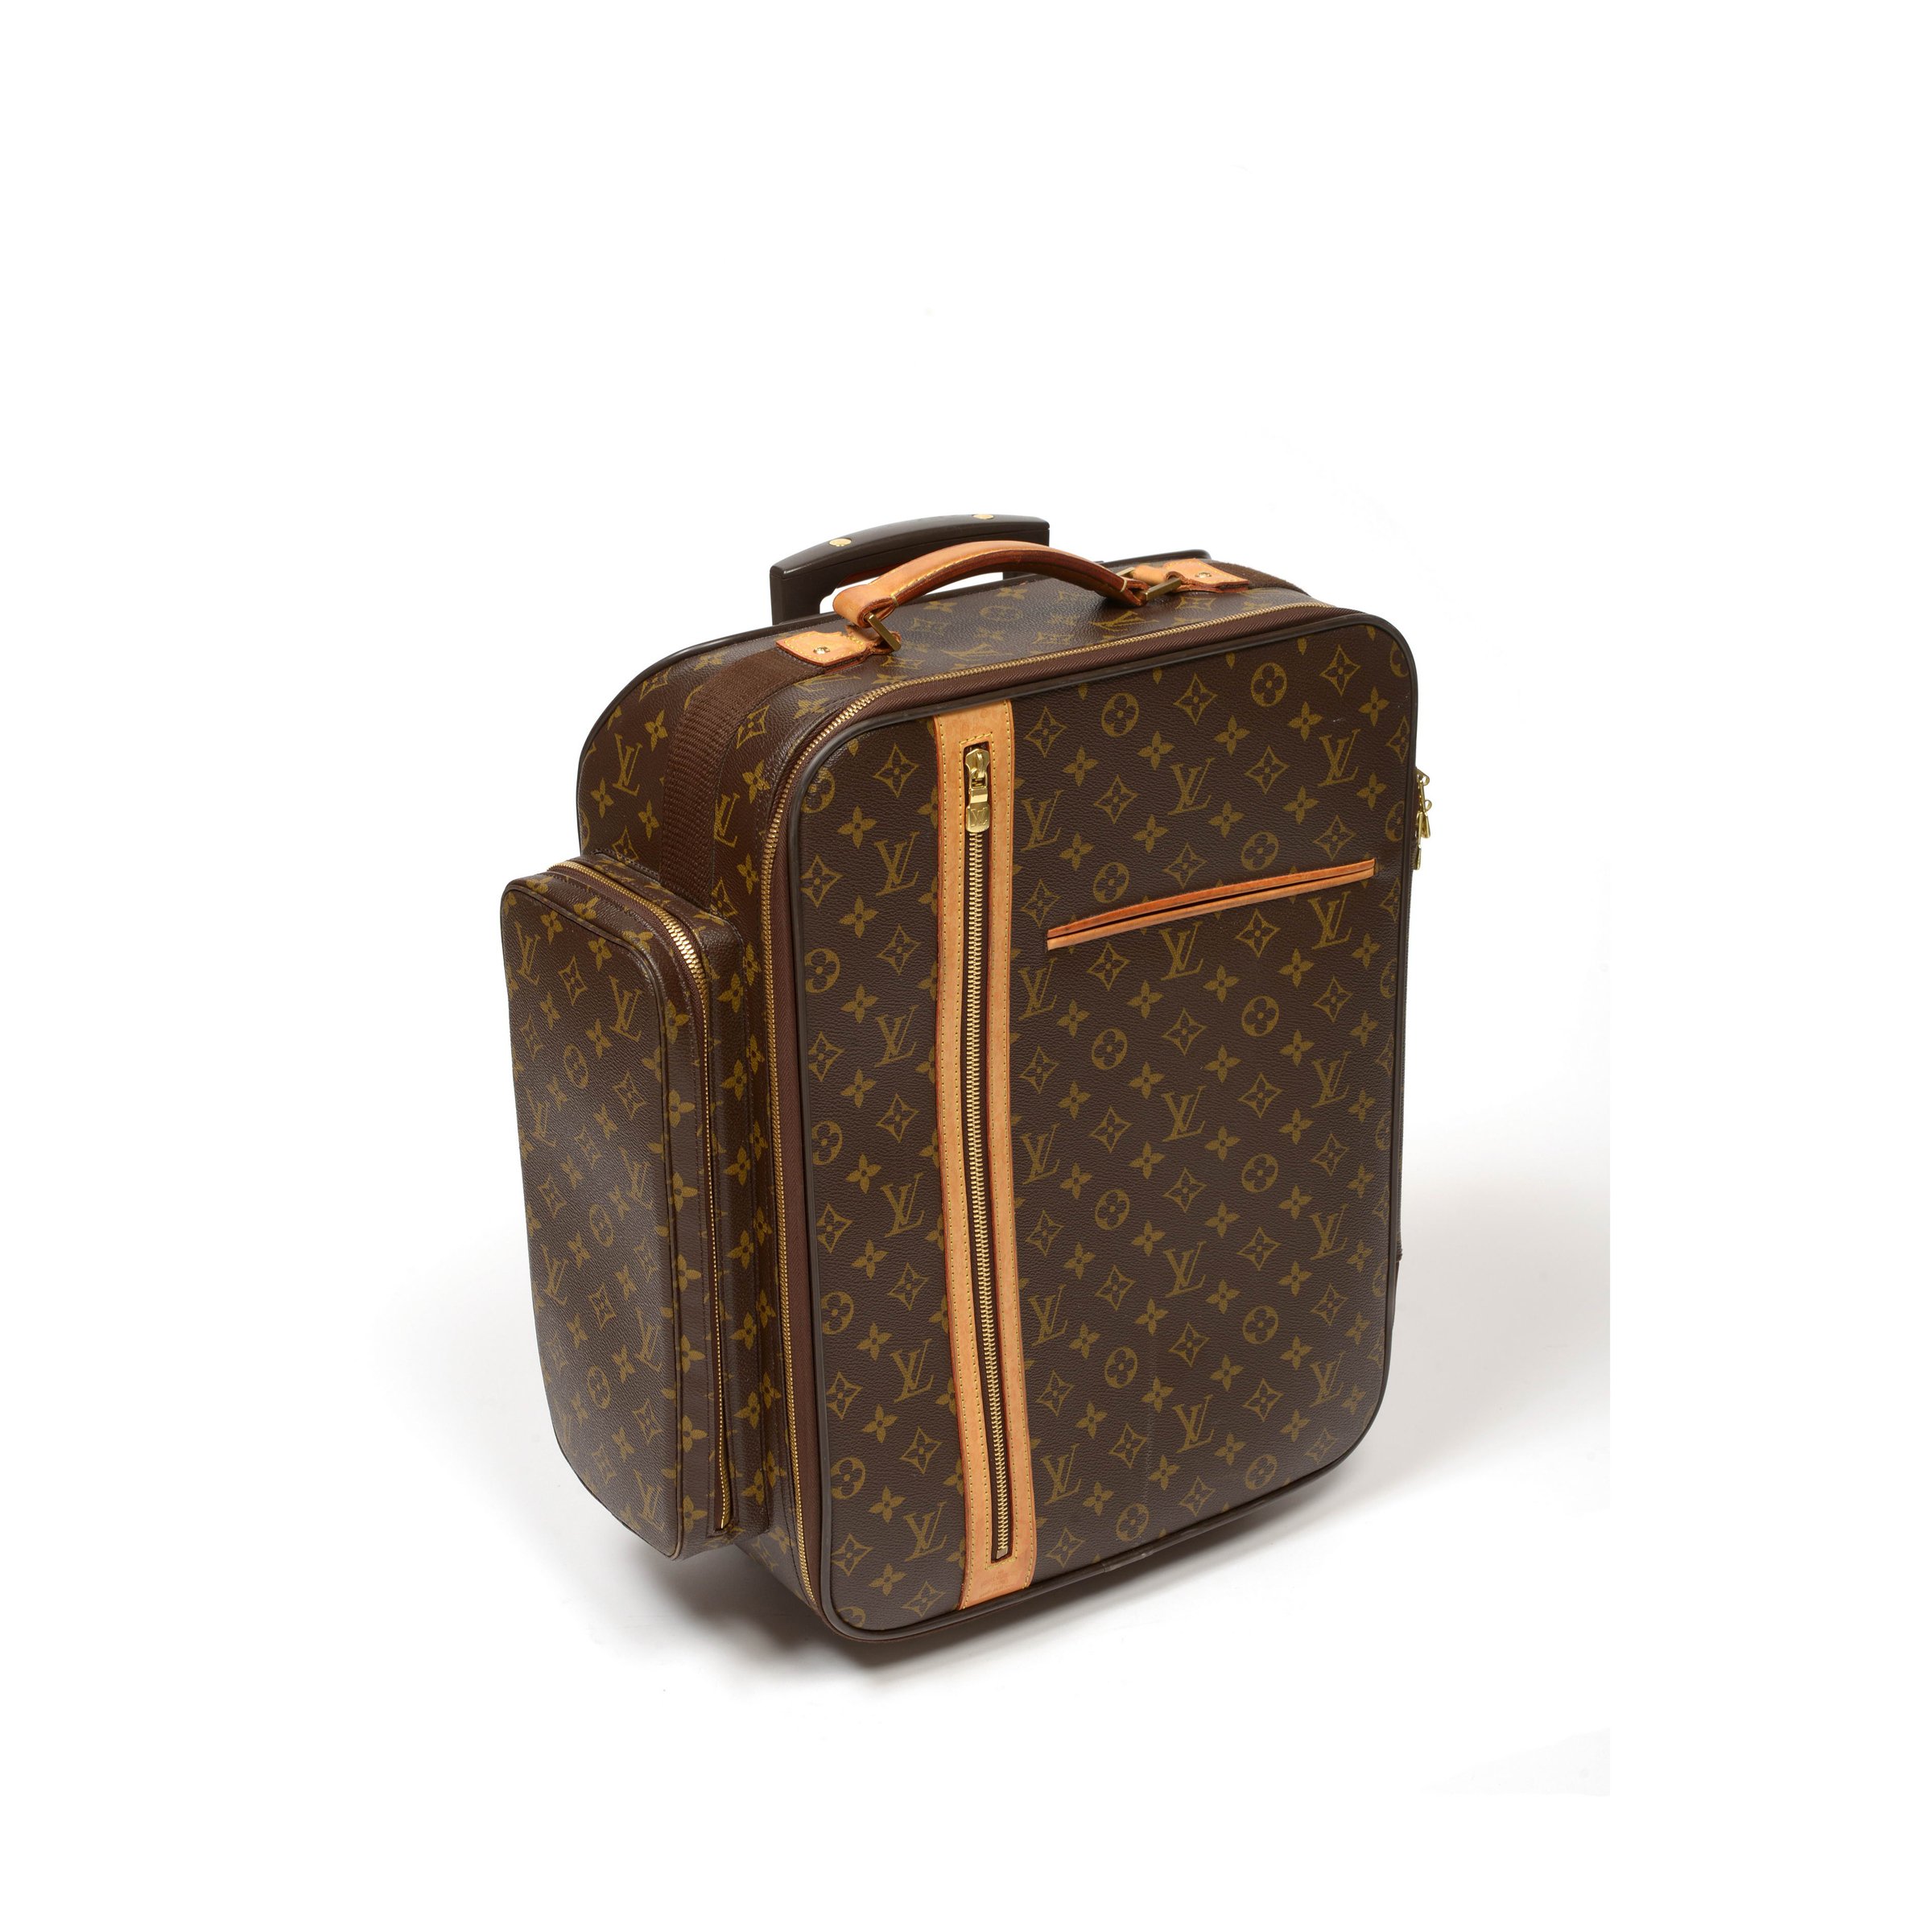 Sold at Auction: Monogram Canvas Rolling Suitcase, Louis Vuitton